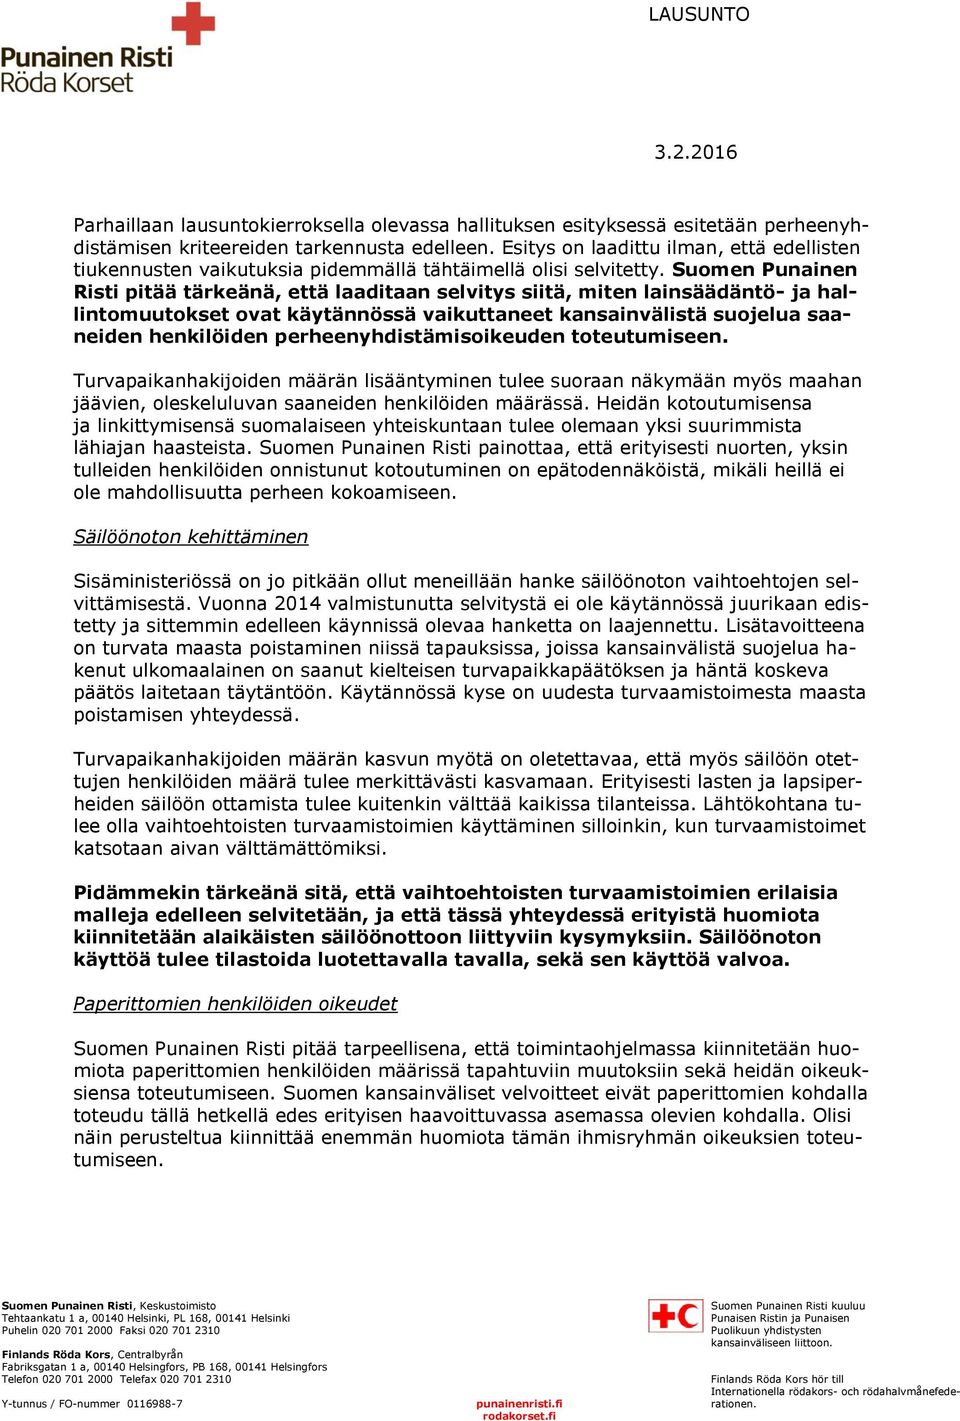 Suomen Punainen Risti pitää tärkeänä, että laaditaan selvitys siitä, miten lainsäädäntö- ja hallintomuutokset ovat käytännössä vaikuttaneet kansainvälistä suojelua saaneiden henkilöiden